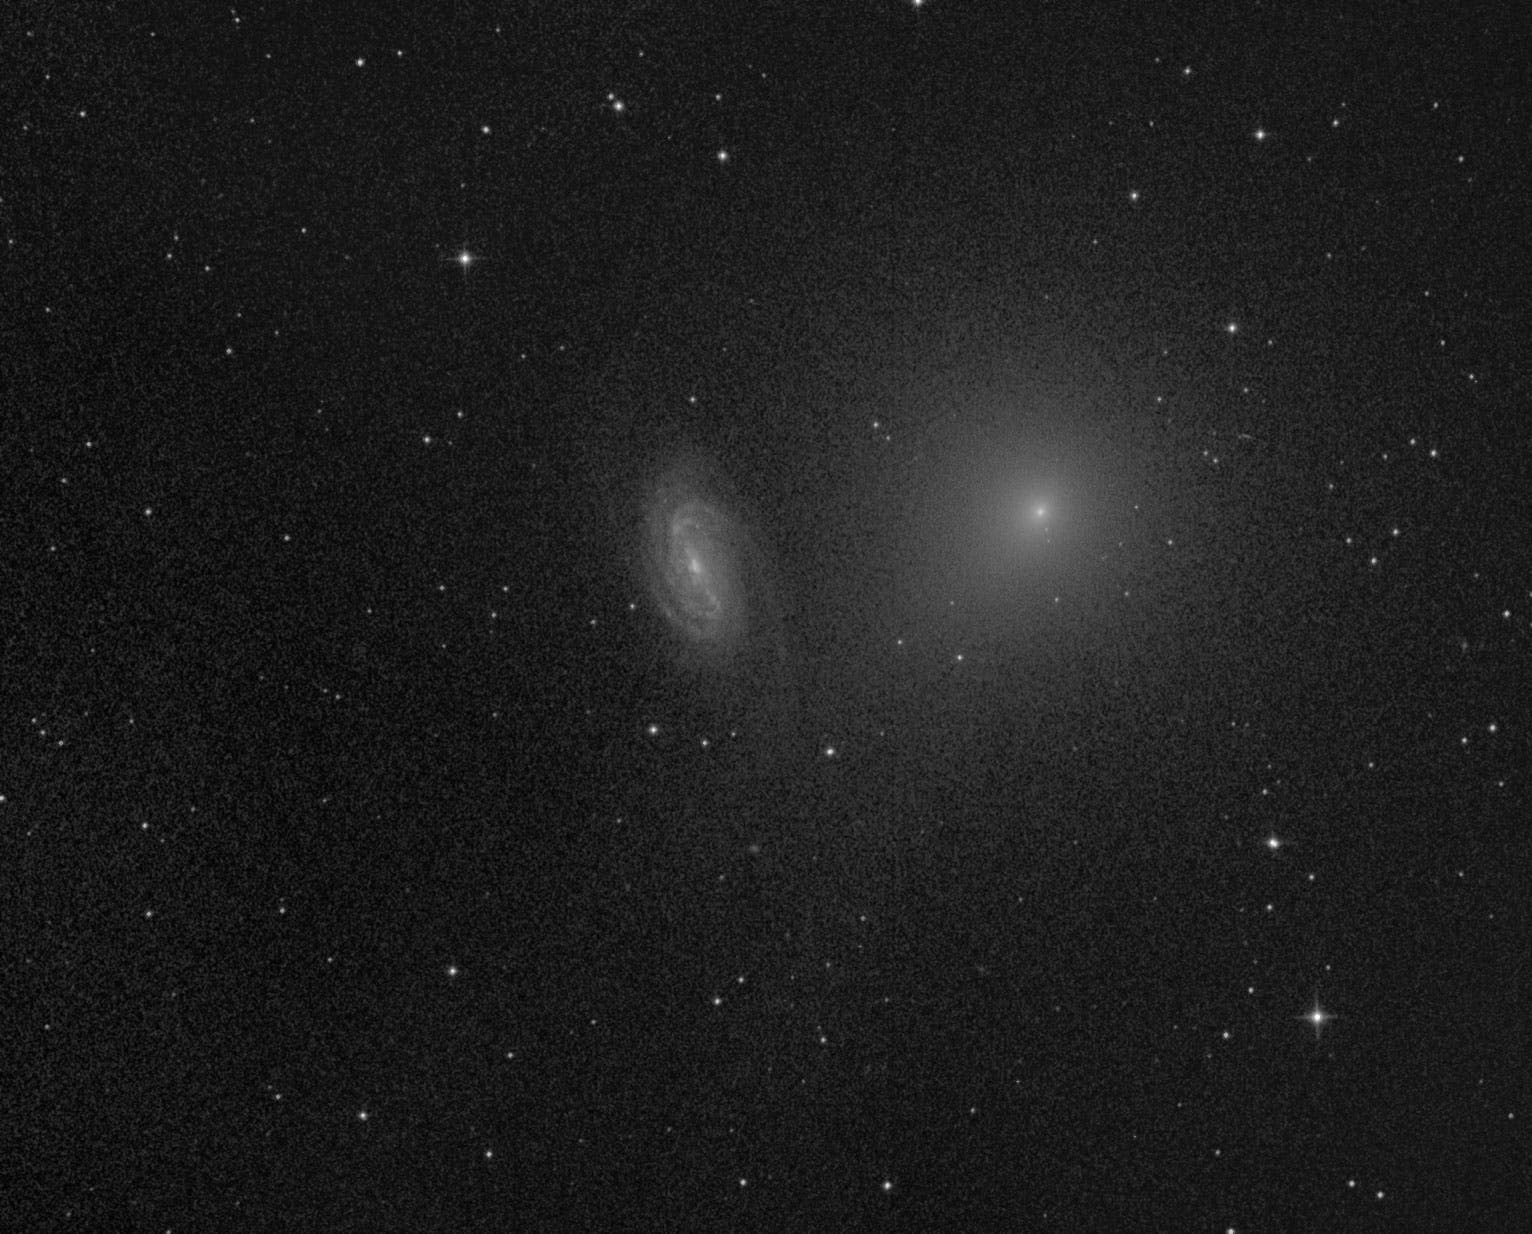 Komet C/2018 Y1 (Iwamoto) bei NGC 2903